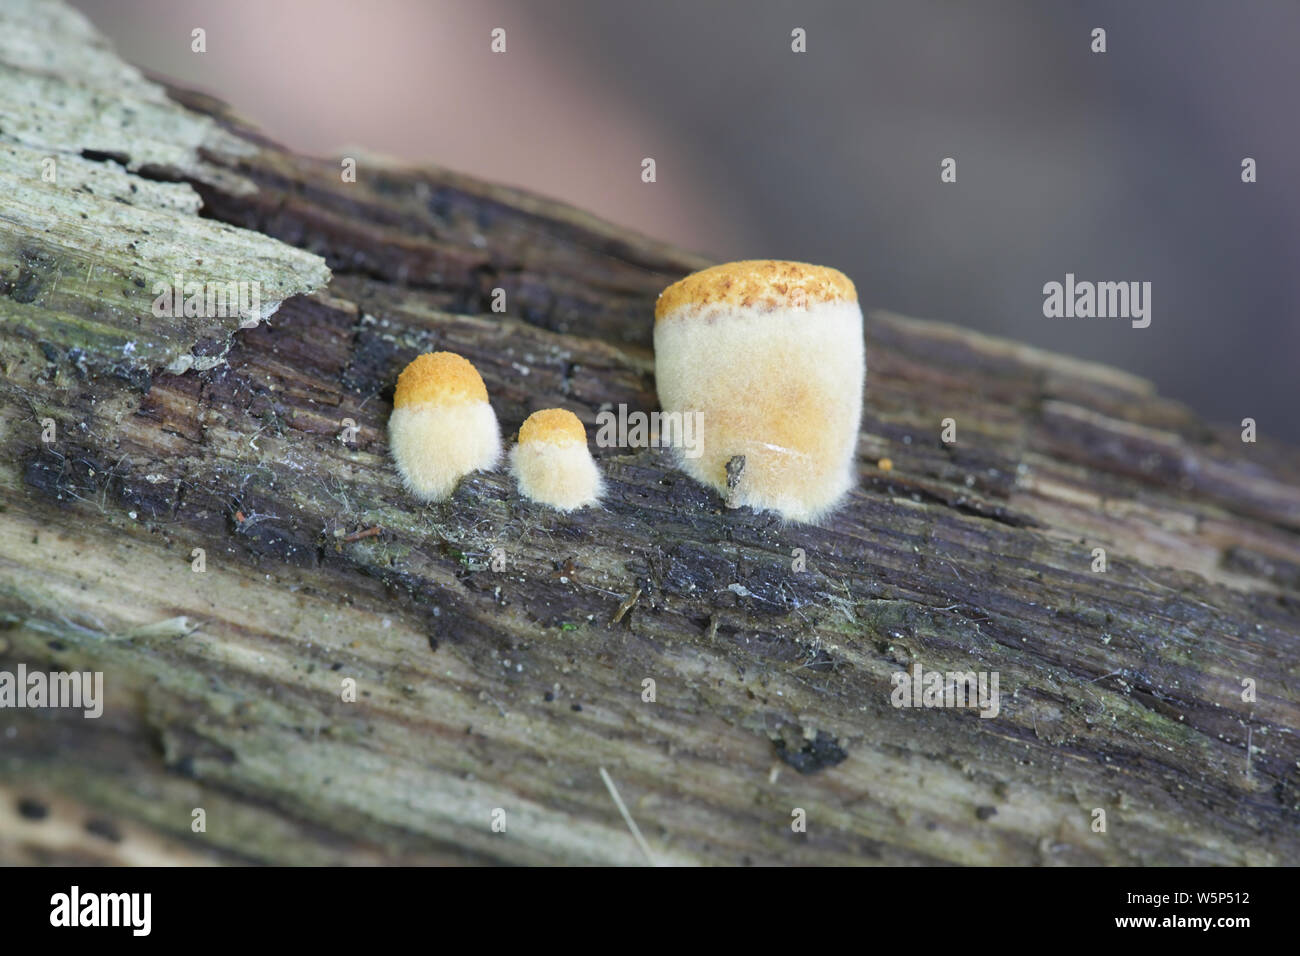 Crucibulum laeve, the Common Bird's-nest Fungus, young specimens growing on rotting wood Stock Photo